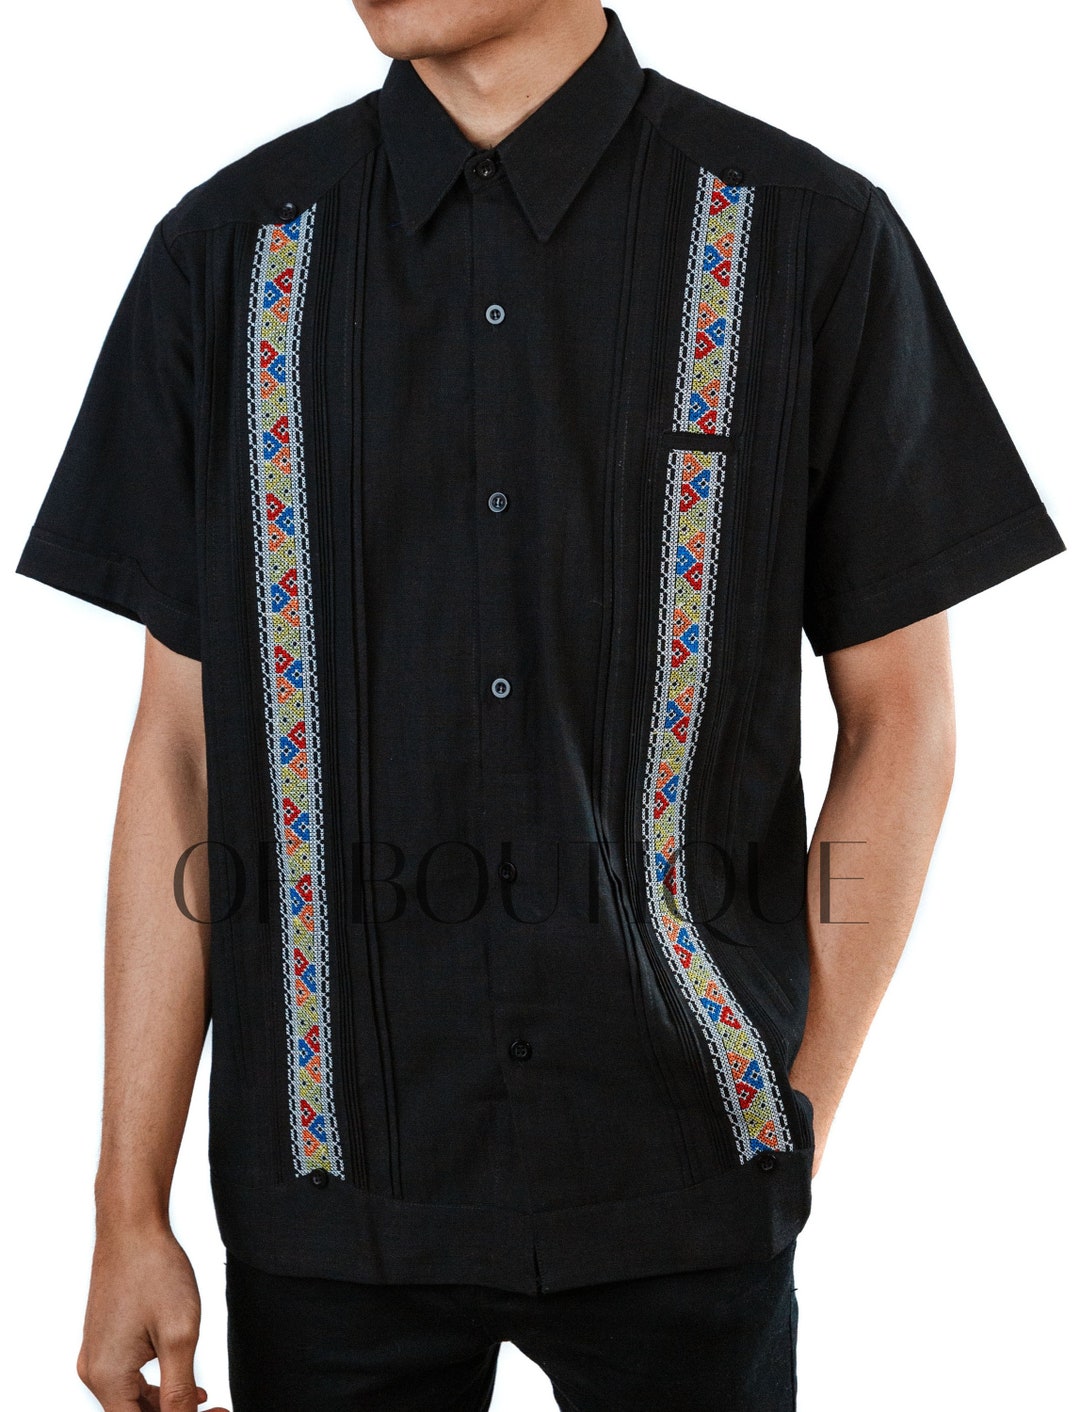 Men's Guayabera ALEGRE Style Shirt Black Men MEXICAN Fiesta Shirt Festive Embroidery Panel Design Kleding Herenkleding Overhemden & T-shirts Overhemden 